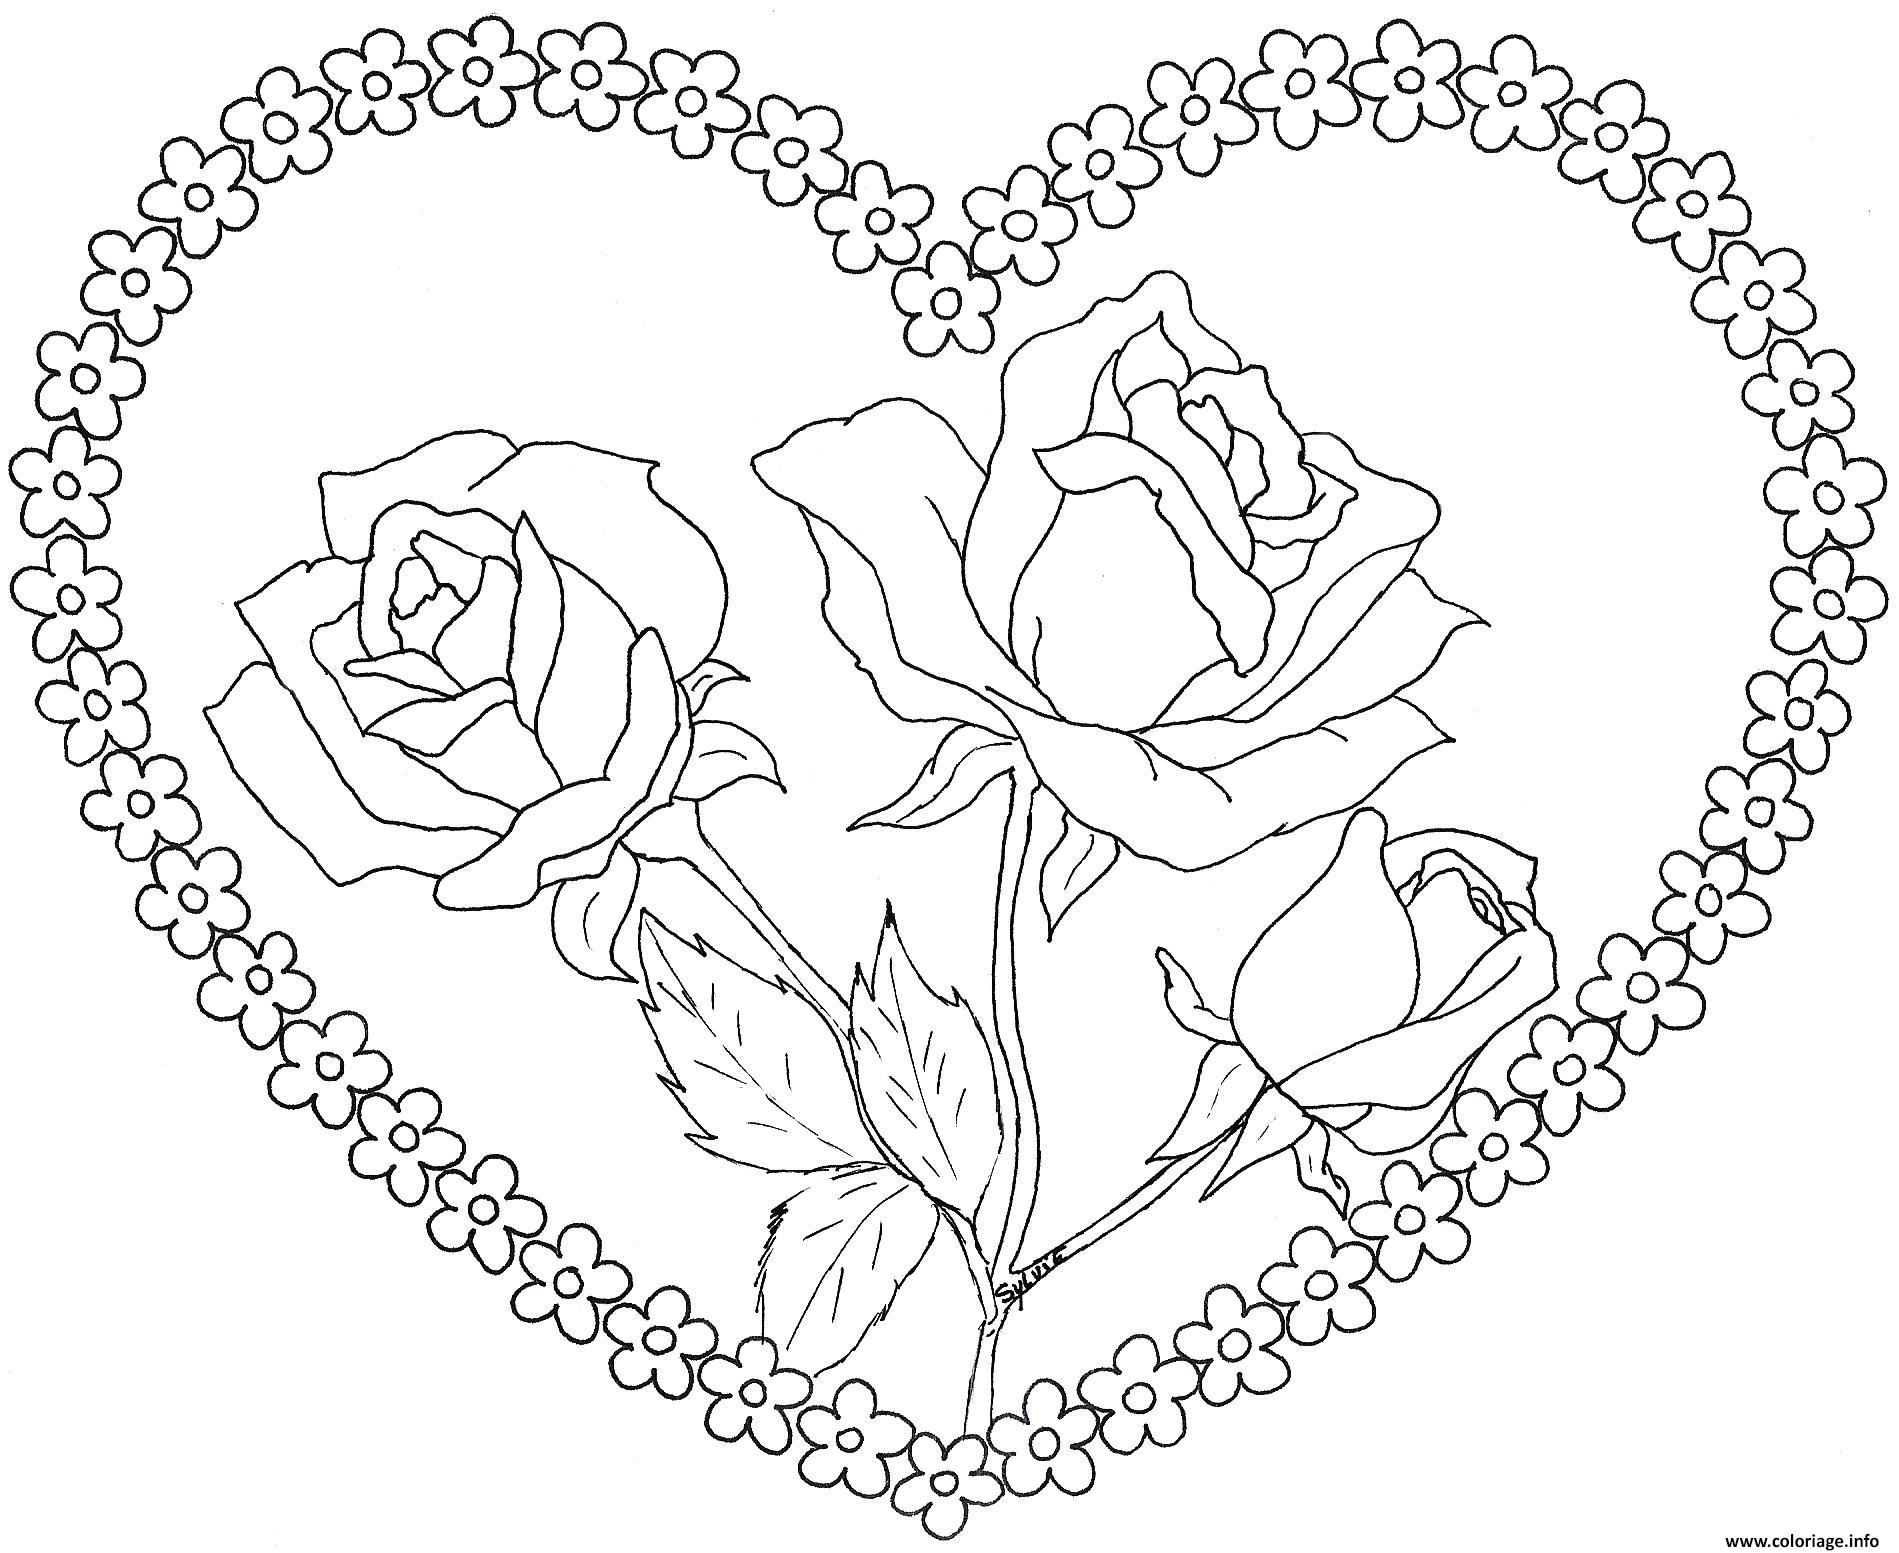 Coloriage dessin coeur saint valentin avec roses